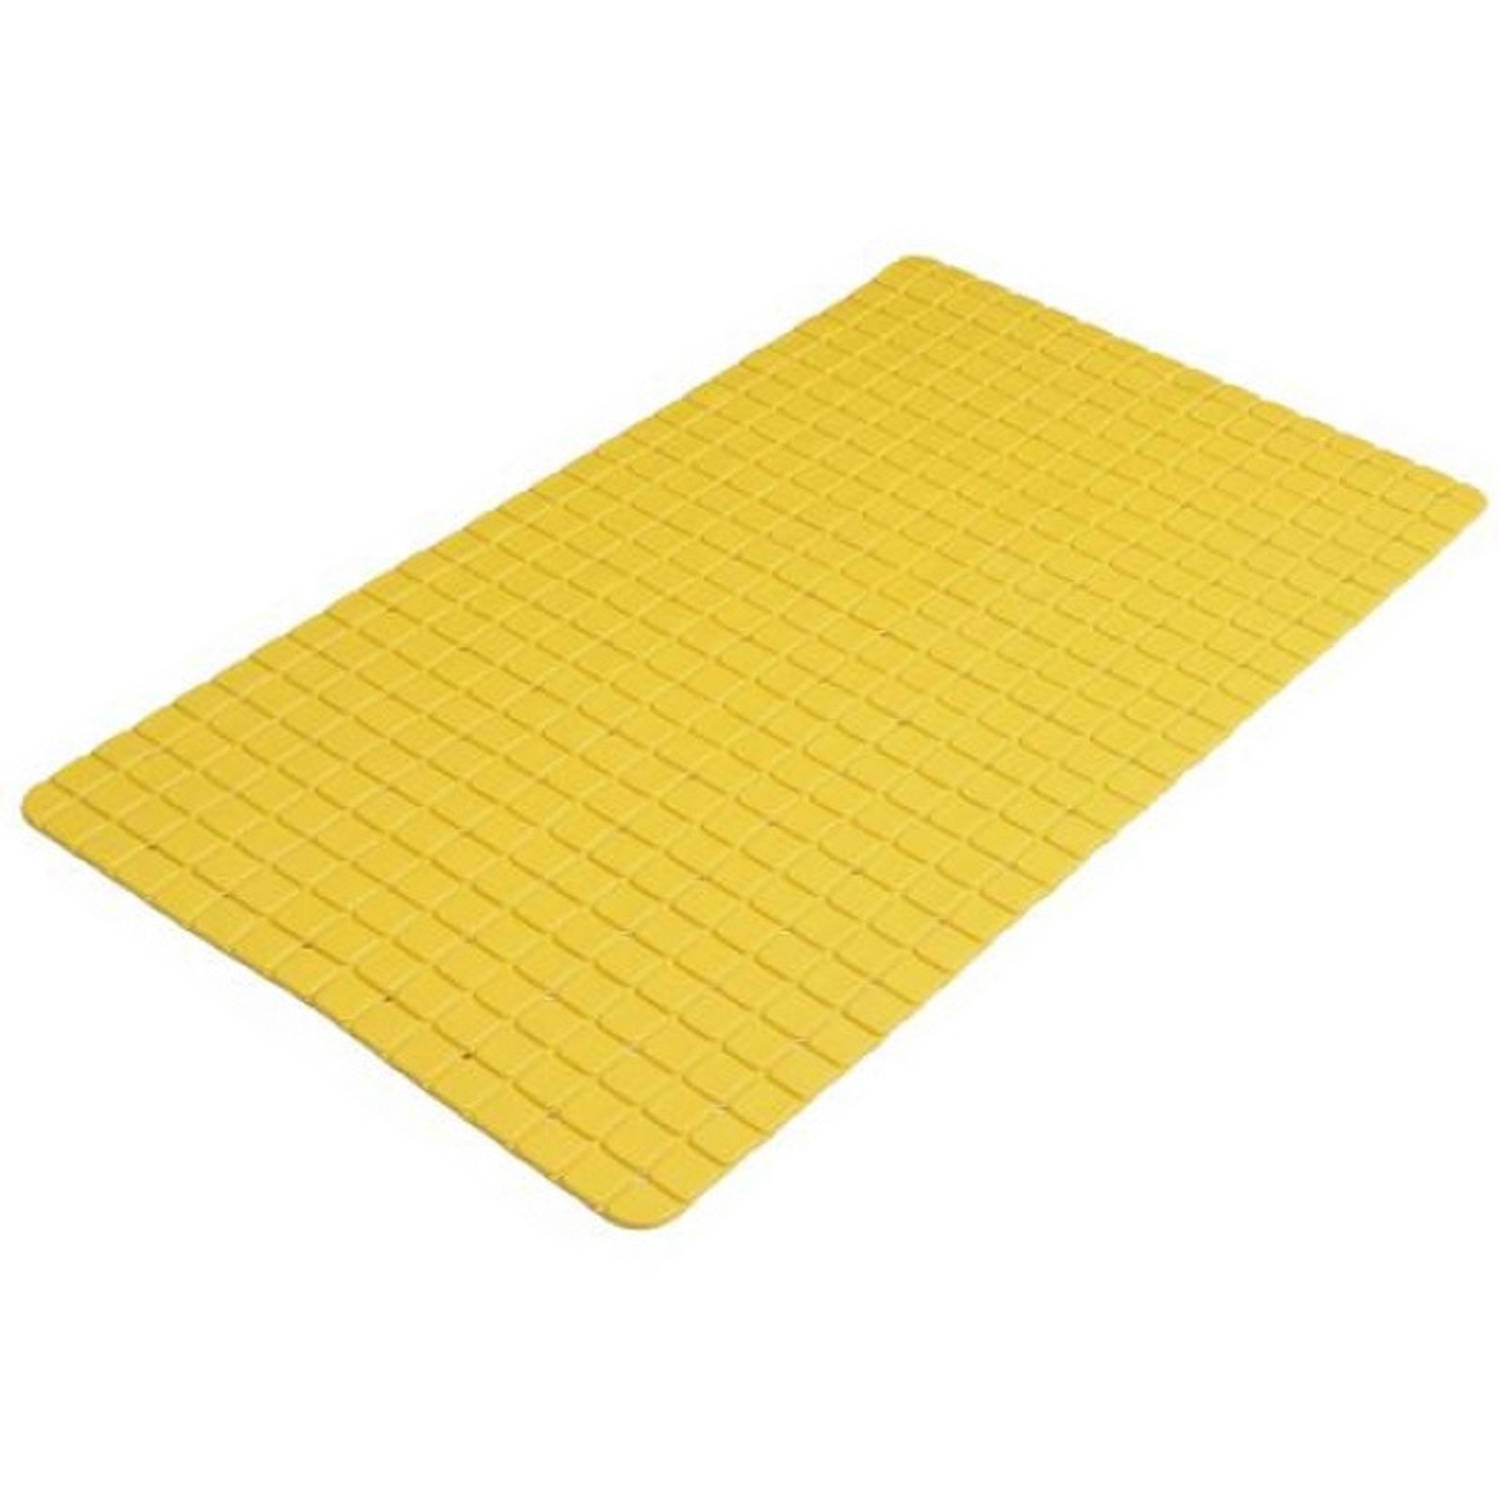 Urban Living Badkamer-douche anti slip mat rubber voor op de vloer okergeel 39 x 69 cm Badmatjes